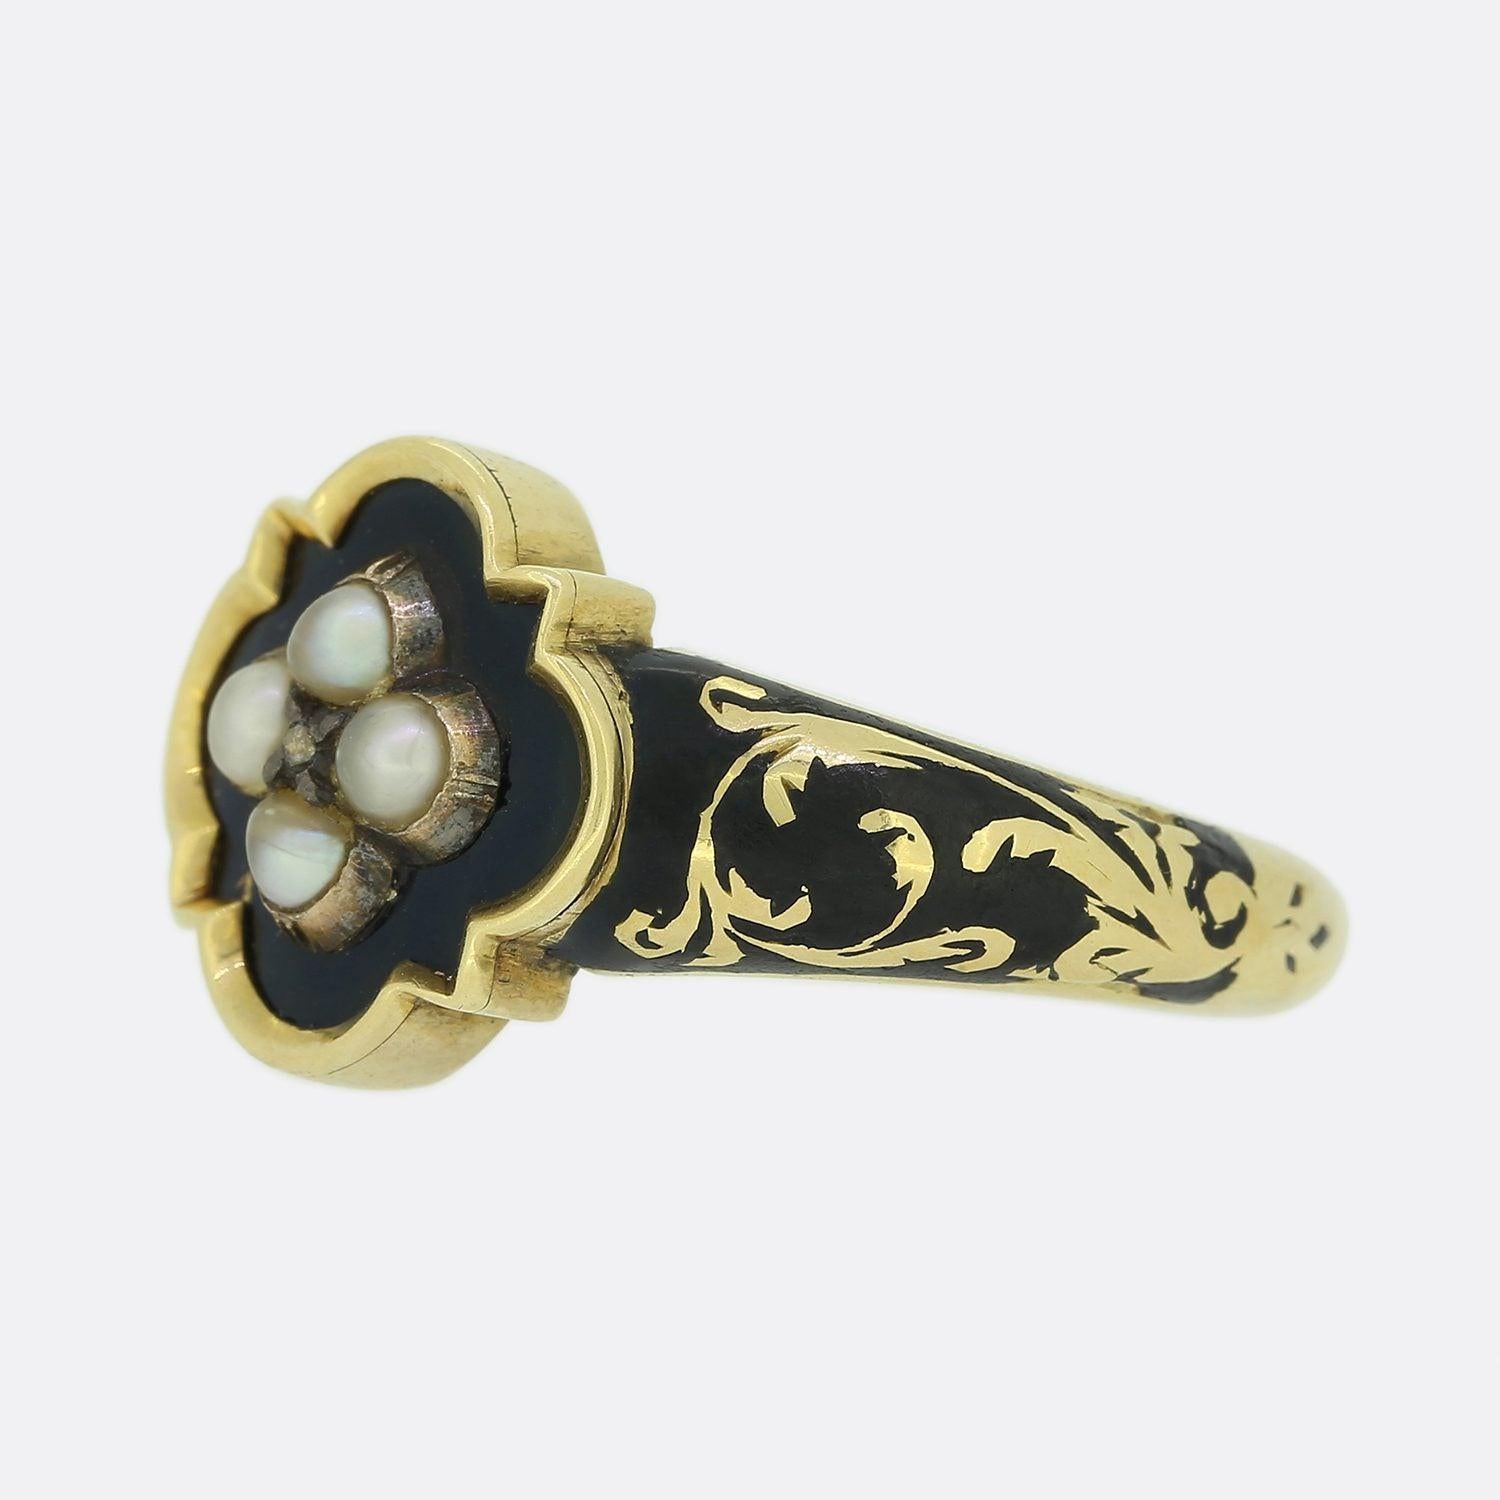 Dies ist ein wunderschön handgefertigter viktorianischer Trauerring aus Gelbgold. Der Ring ist mit einem zentralen Diamanten im Rosenschliff in einer geschliffenen Fassung besetzt und von vier natürlichen Originalperlen umgeben. Feine schwarze